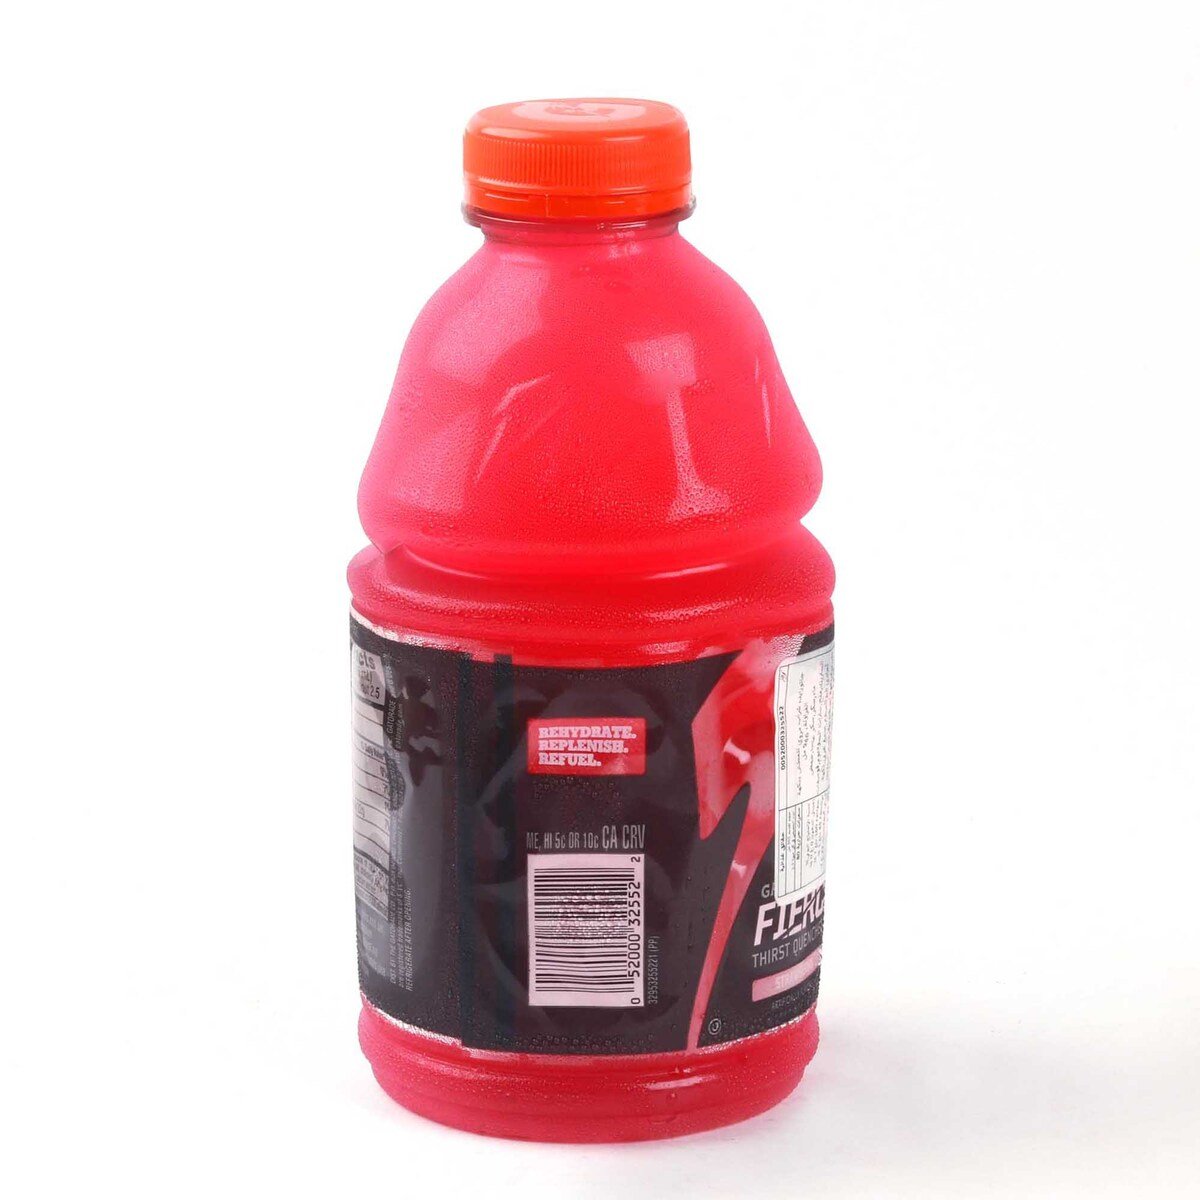 Gatorade Fierce Thirst Quencher Strawberry Sports Drink 946 ml